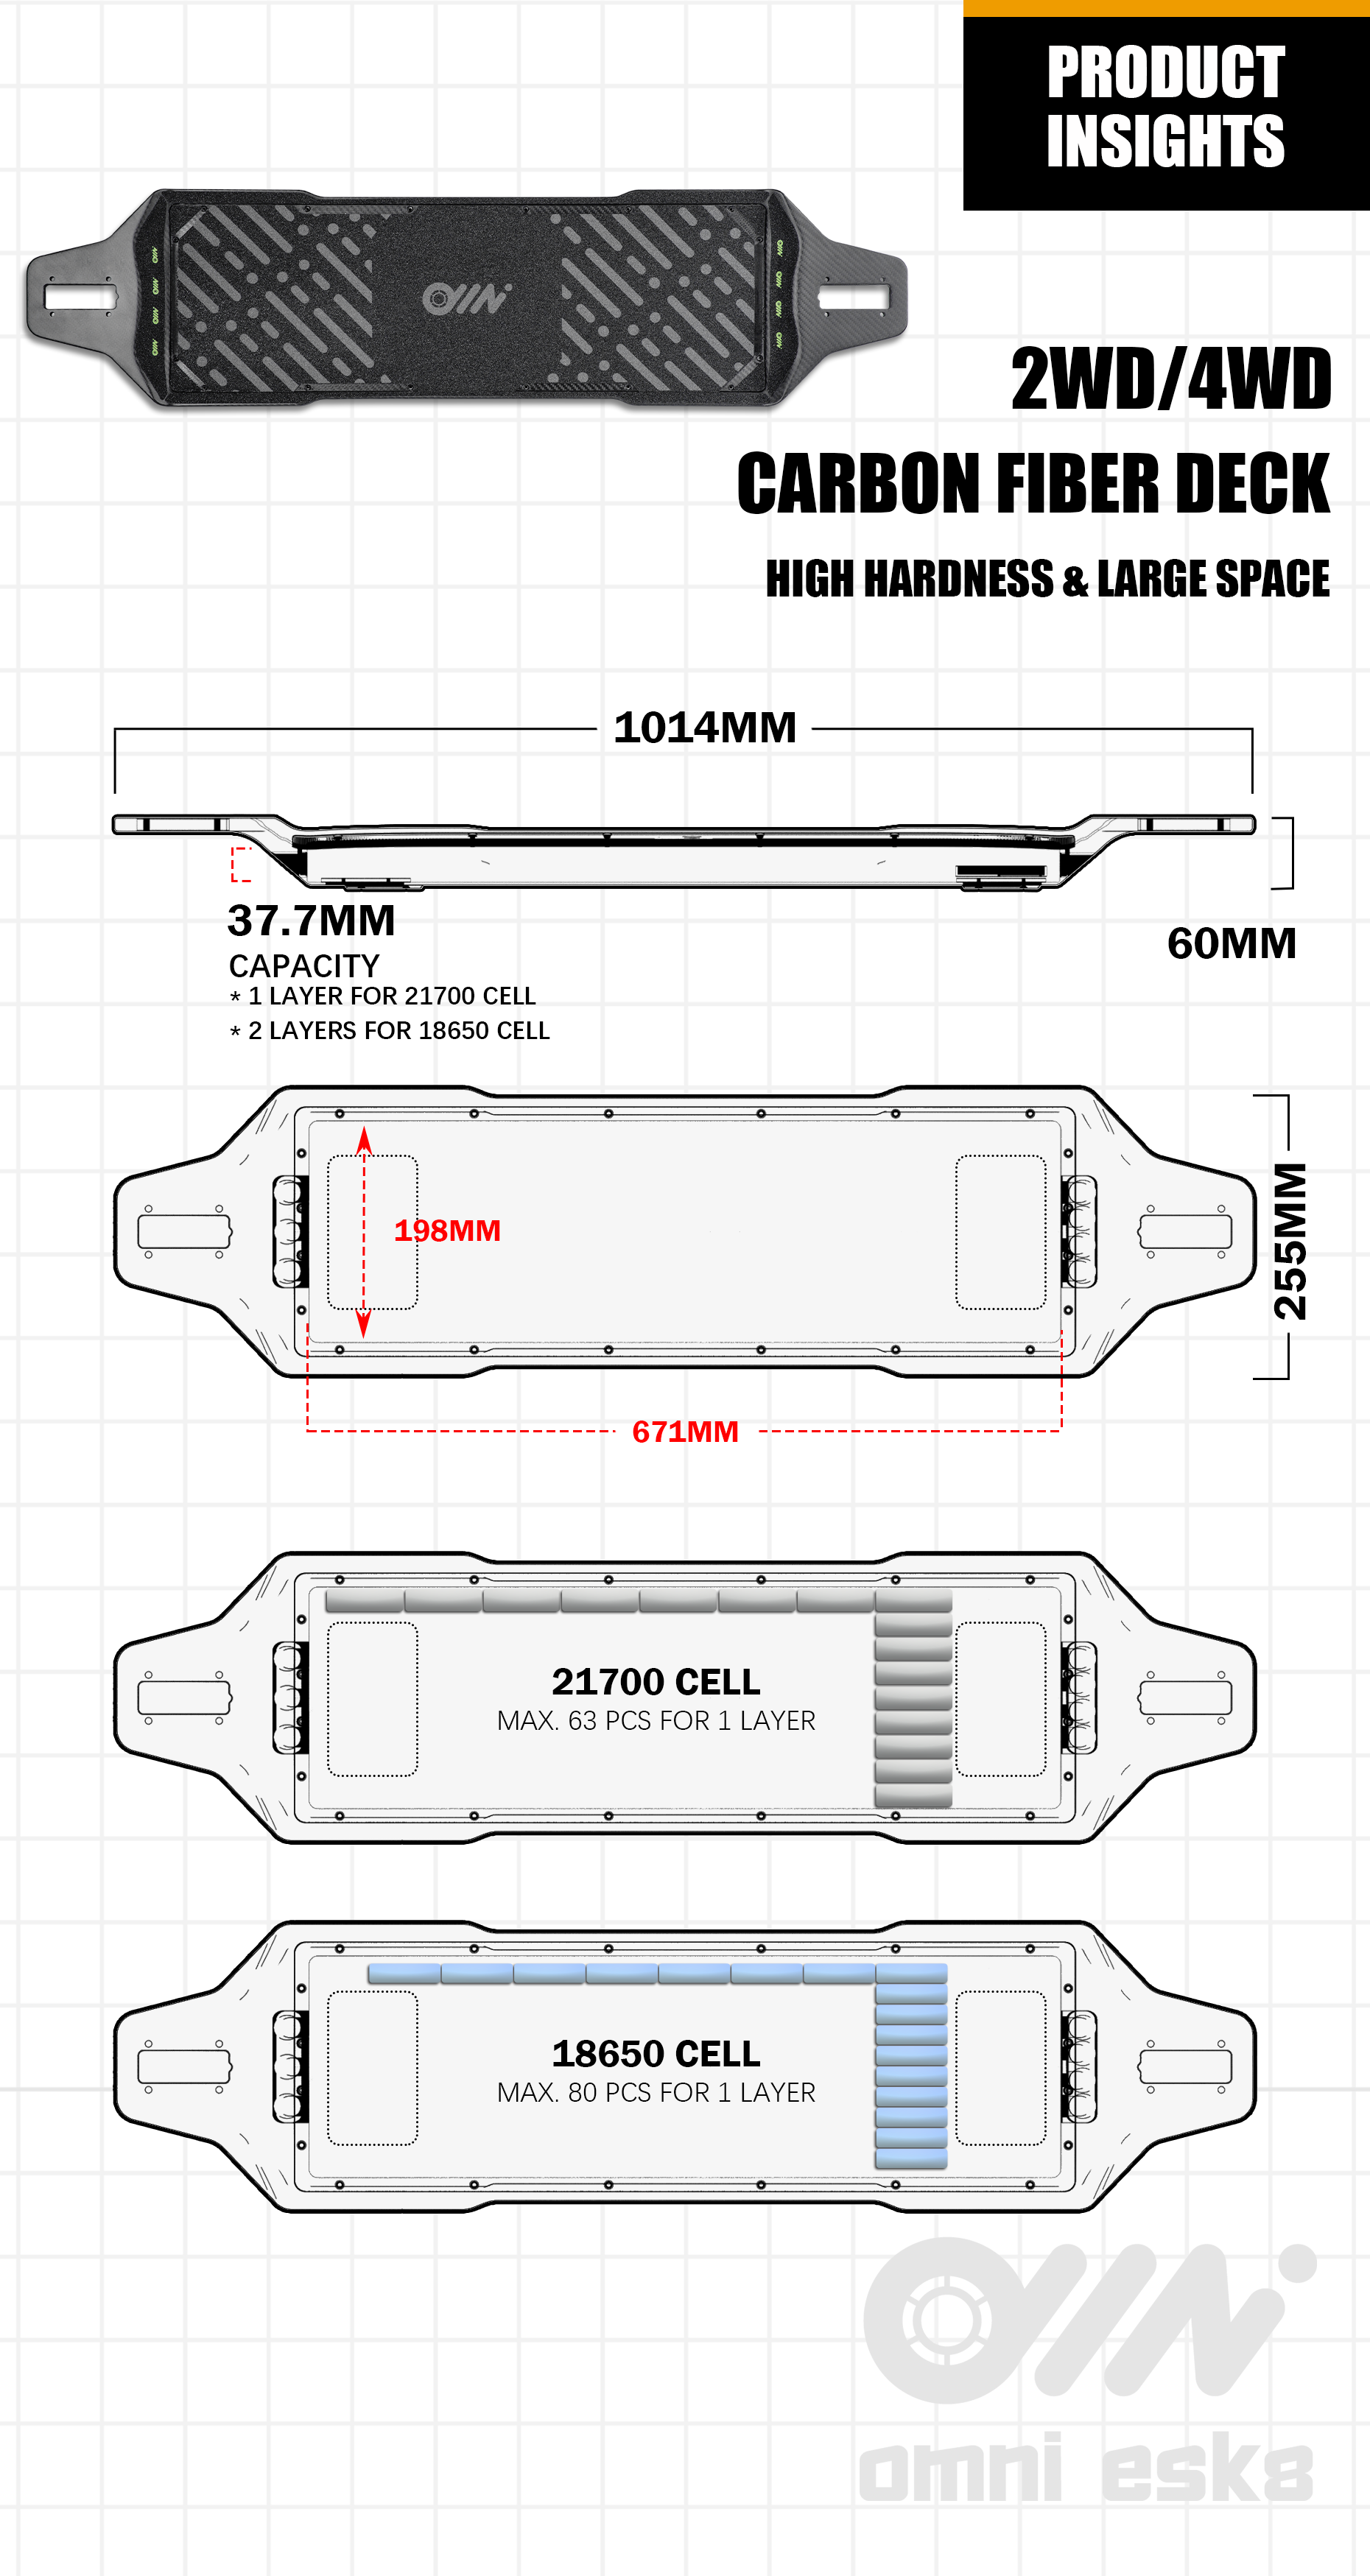 omni esk8 carbon fiber deck